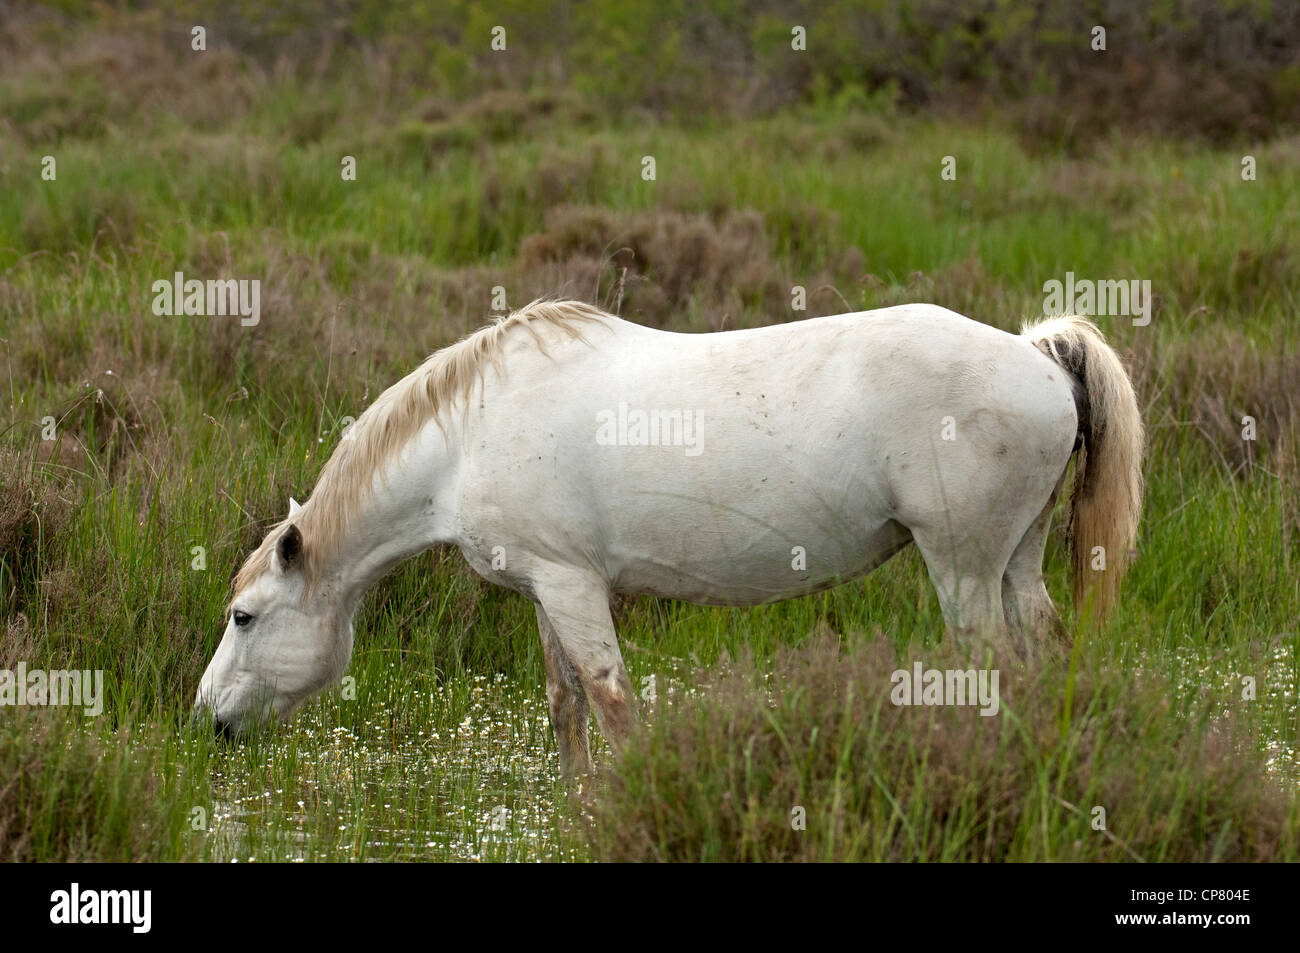 Semi-sauvages cheval Camargue dans une zone humide, Camargue, France Banque D'Images